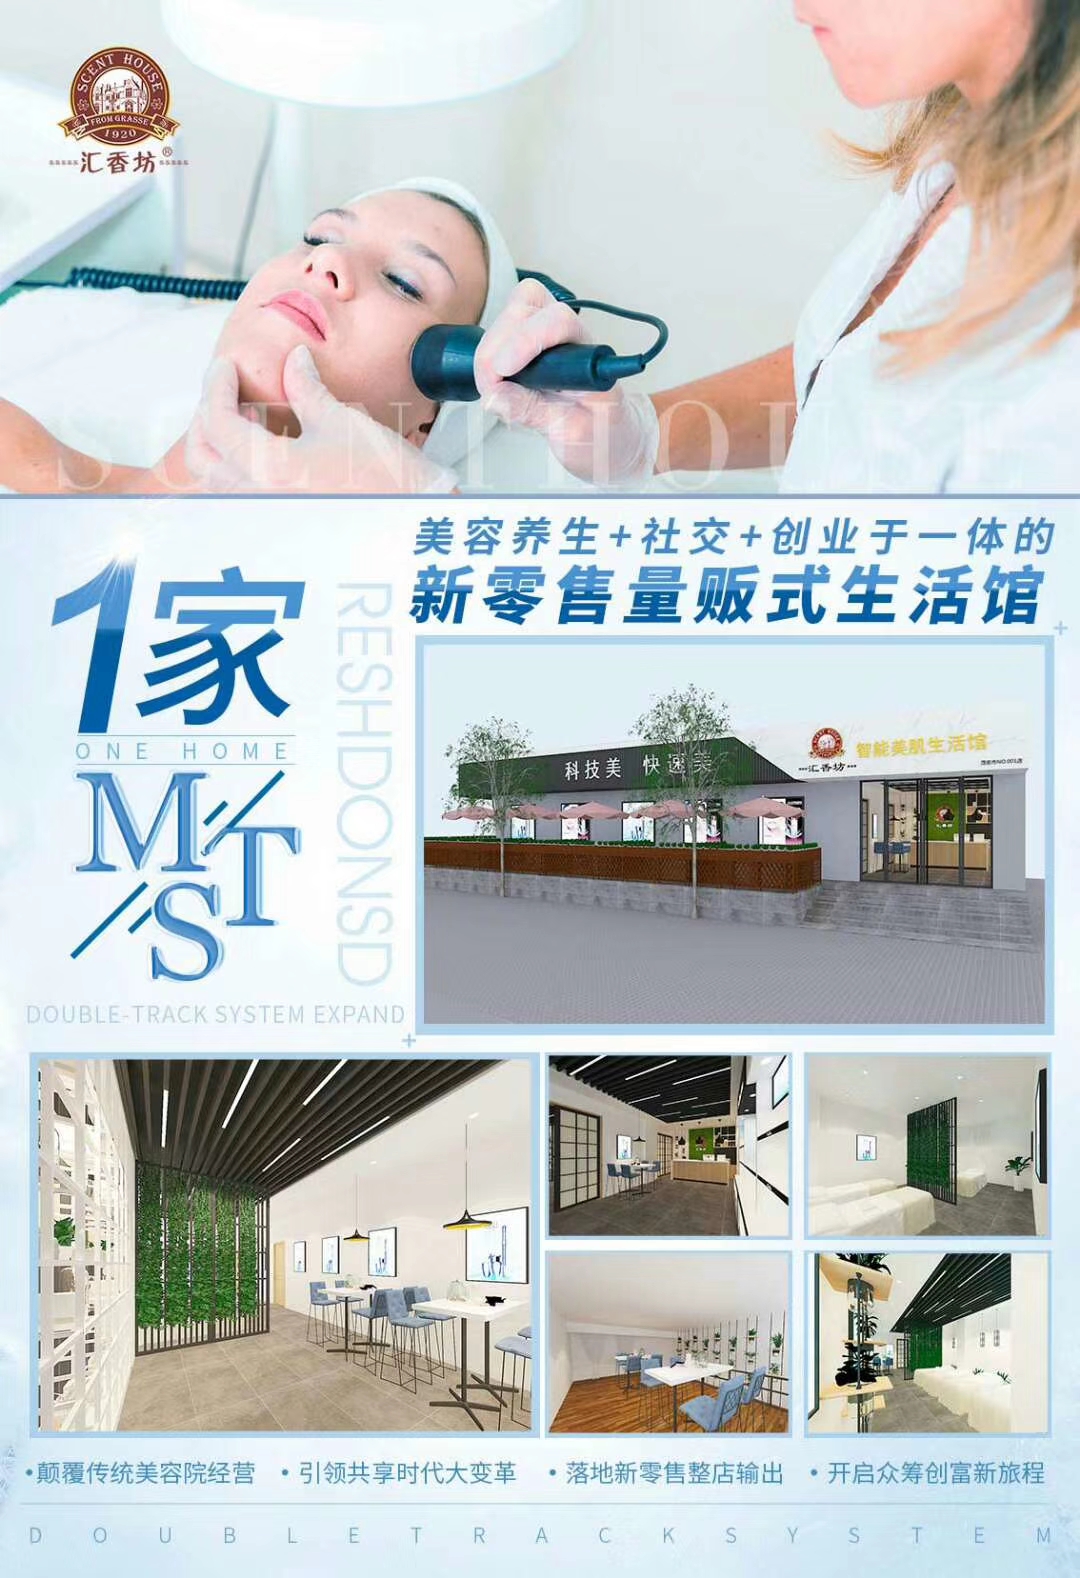 广州瑞美医疗美容盛大开业汇香坊现场签约达成共识米乐m6(图3)